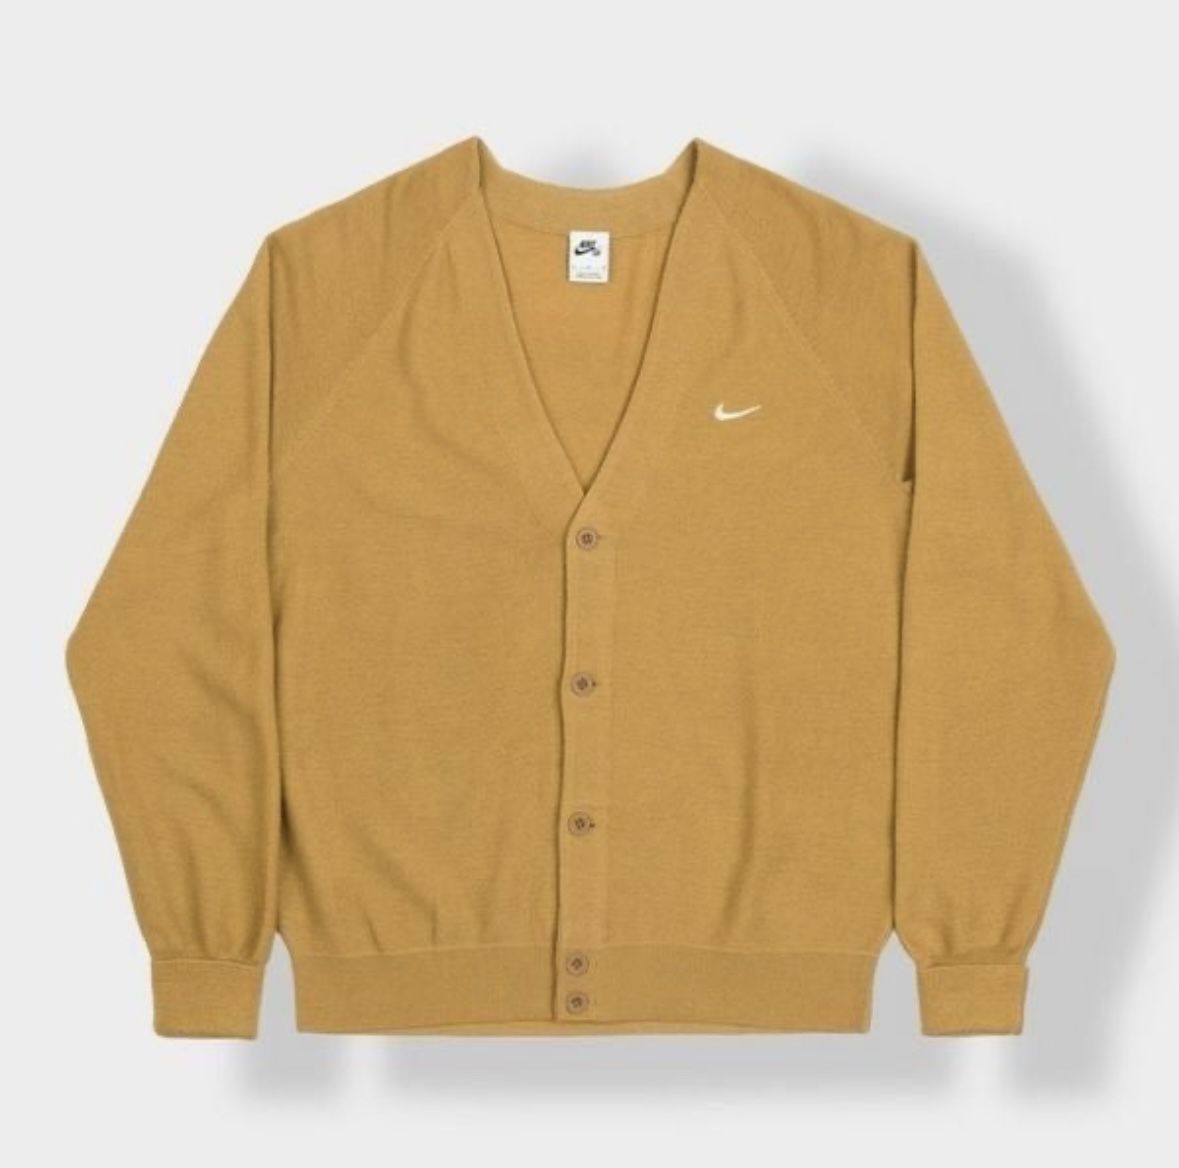 Men’s size Medium Nike SB cardigan sweater gold Brown wool blend skate vintage